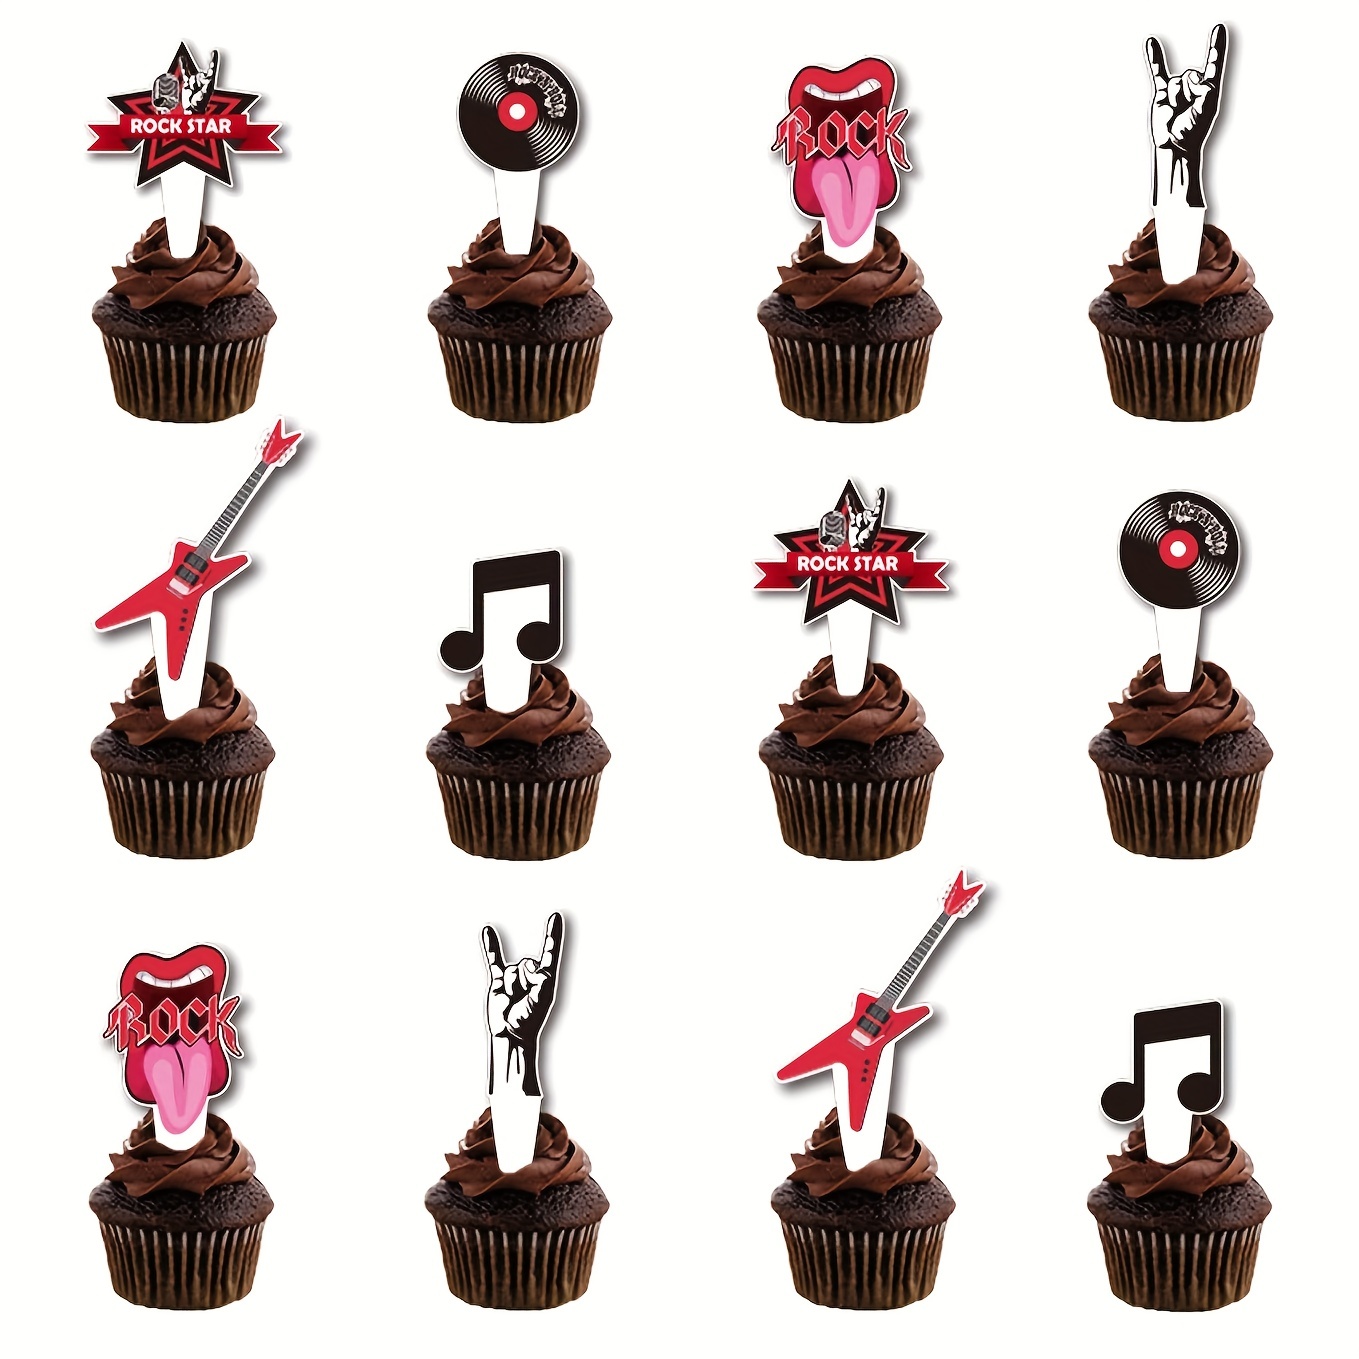 Music note birthday cake | Music note cake, Music note birthday cake,  Themed cakes